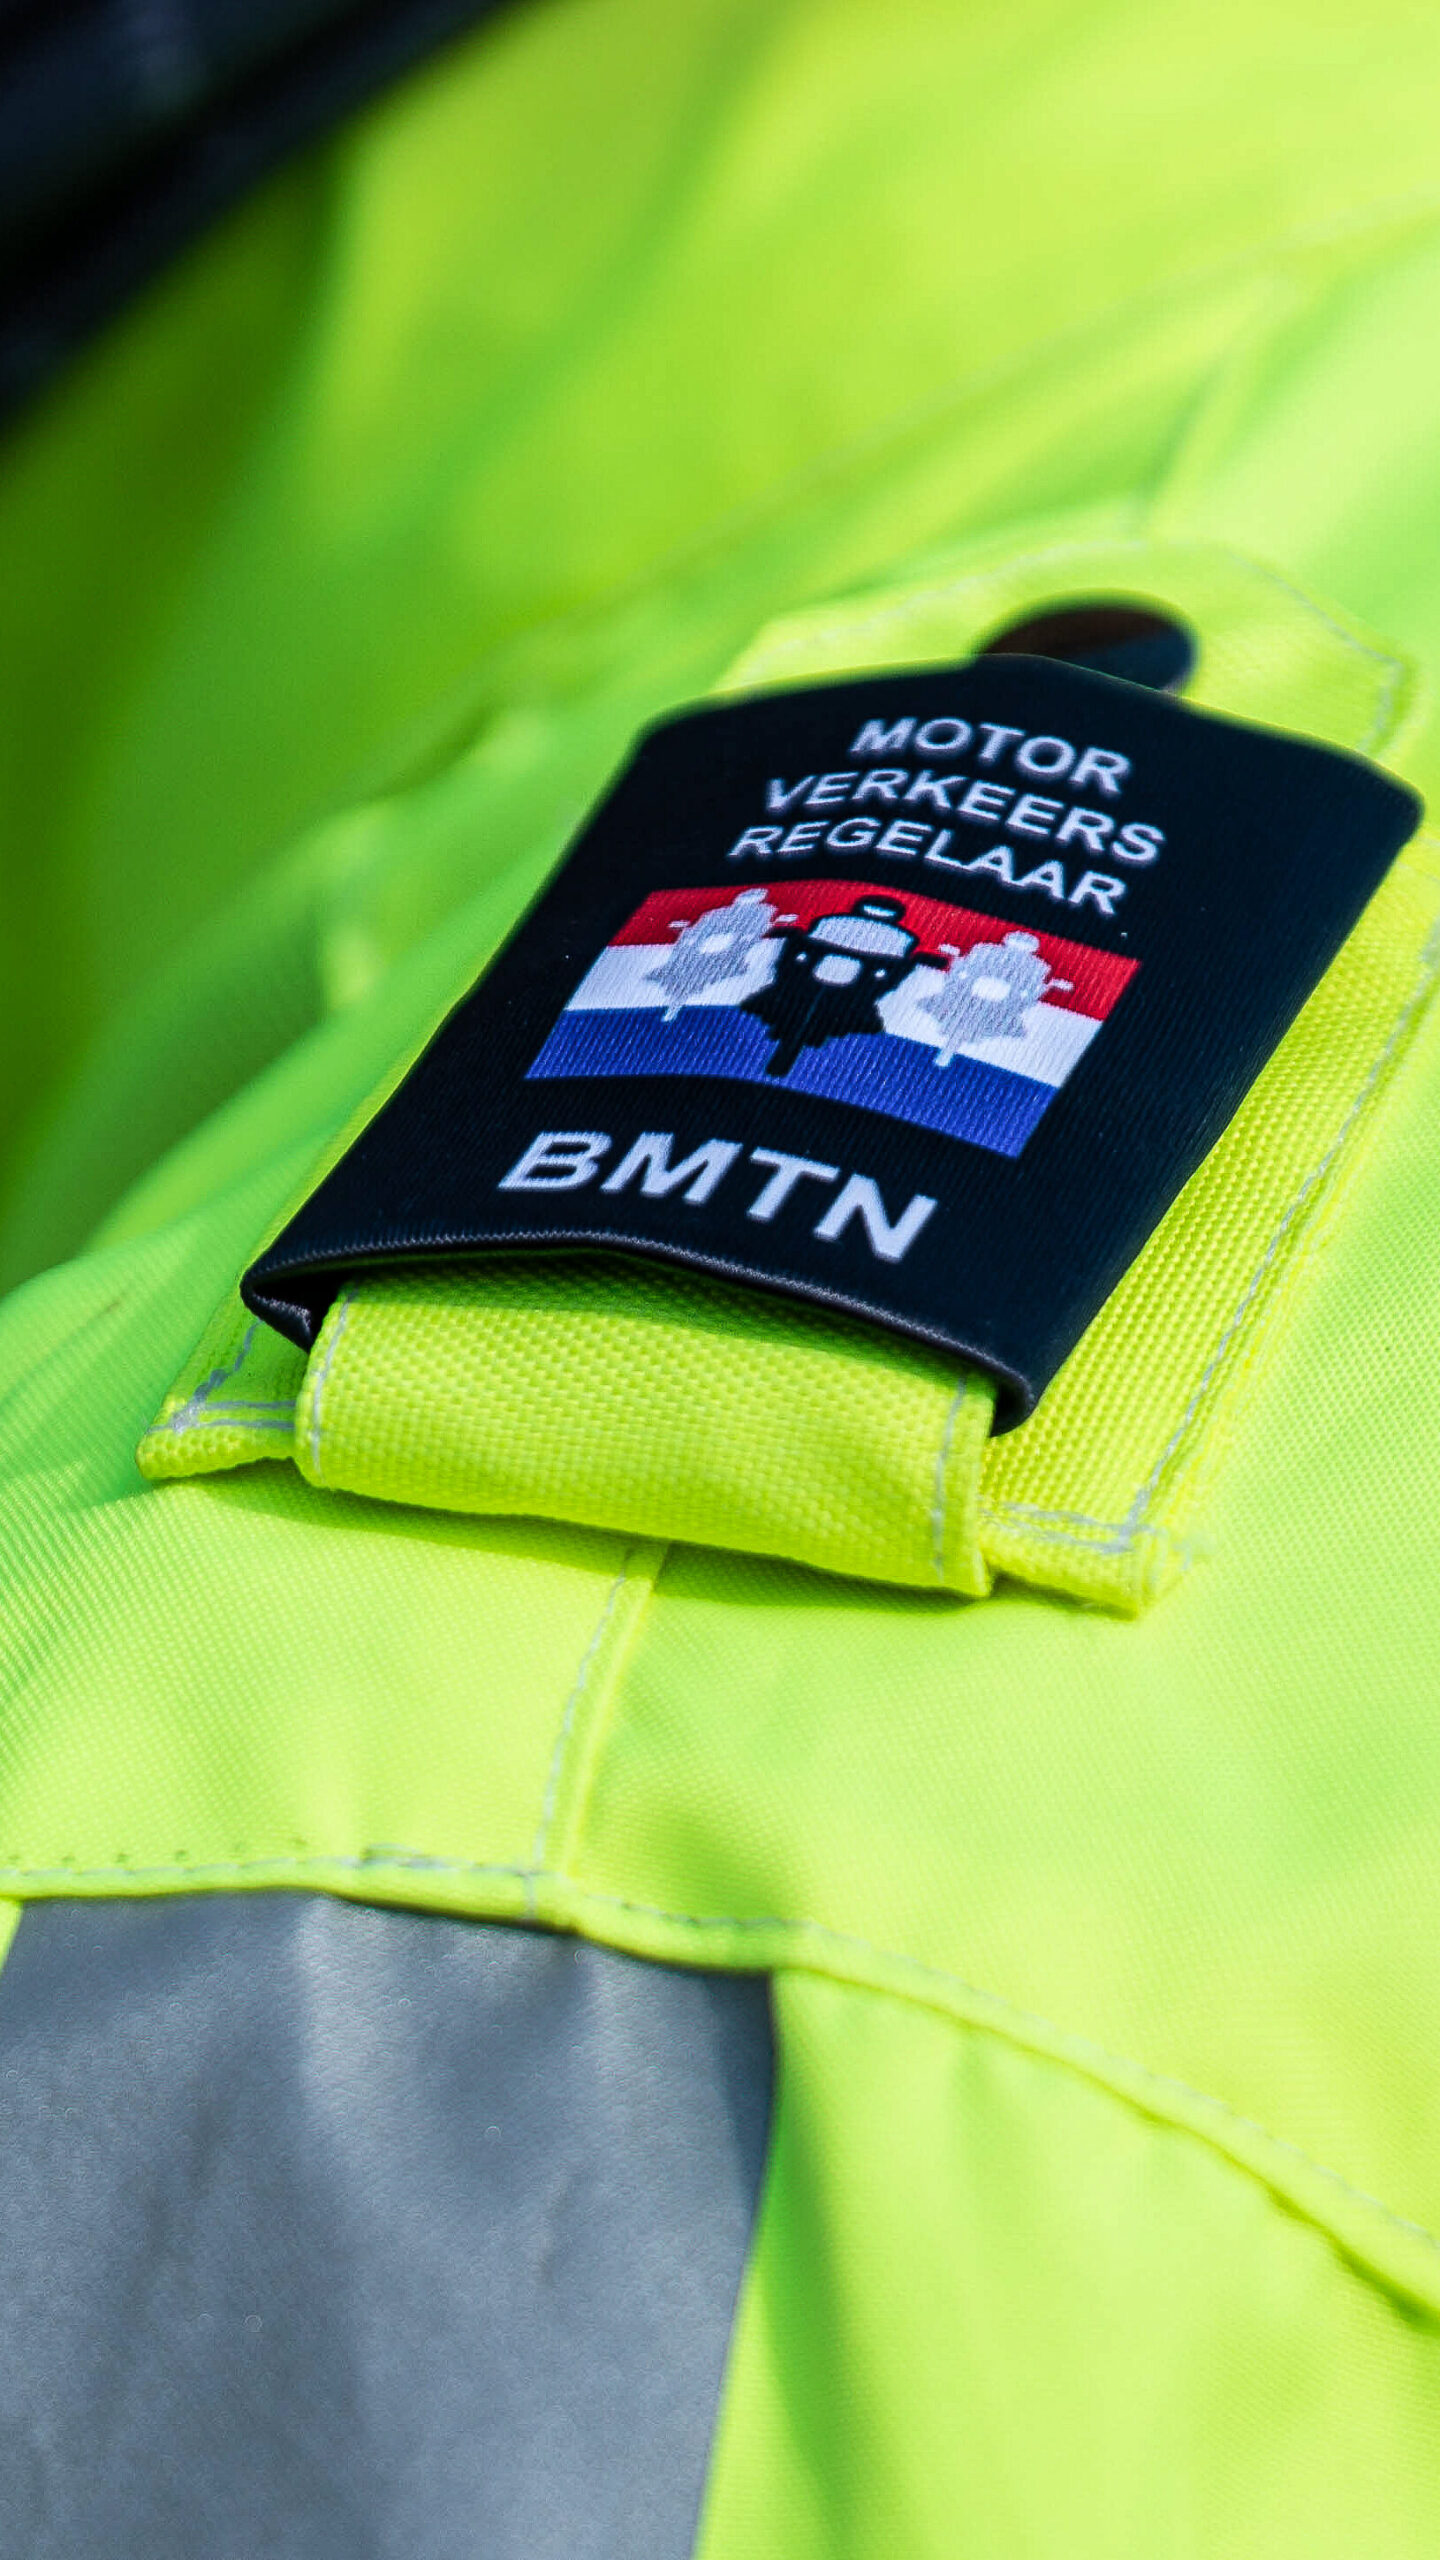 BMTN Motor-Verkeersregelaar schouderepaulet